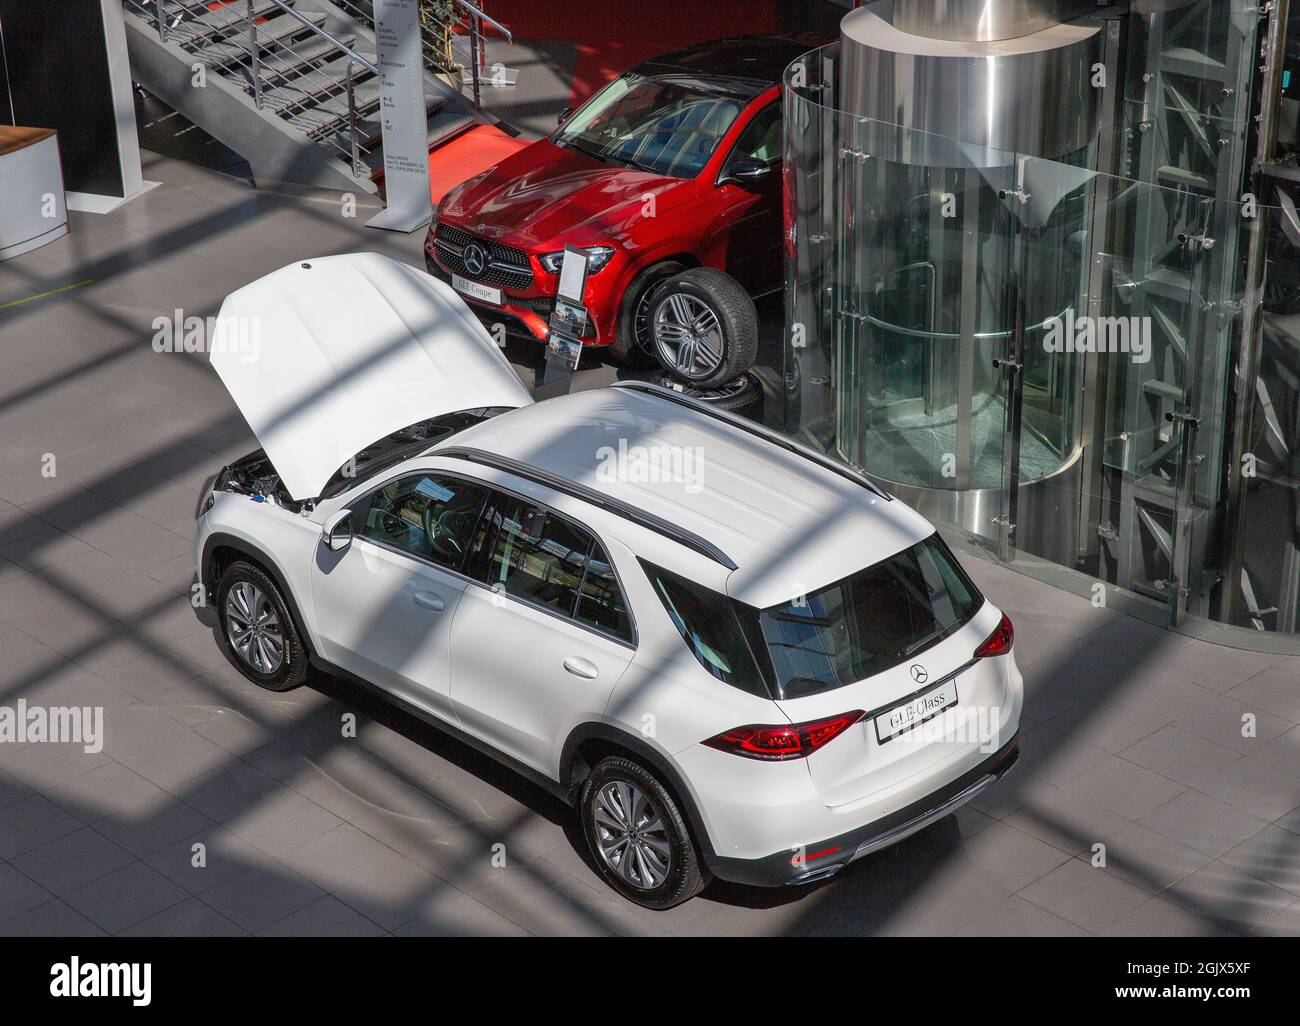 KIEW, UKRAINE - 10. MAI 2021: Neuwagen in Innenräumen im Mercedes-Benz Automotive Center Händlerbetrieb, Blick von oben. Stockfoto